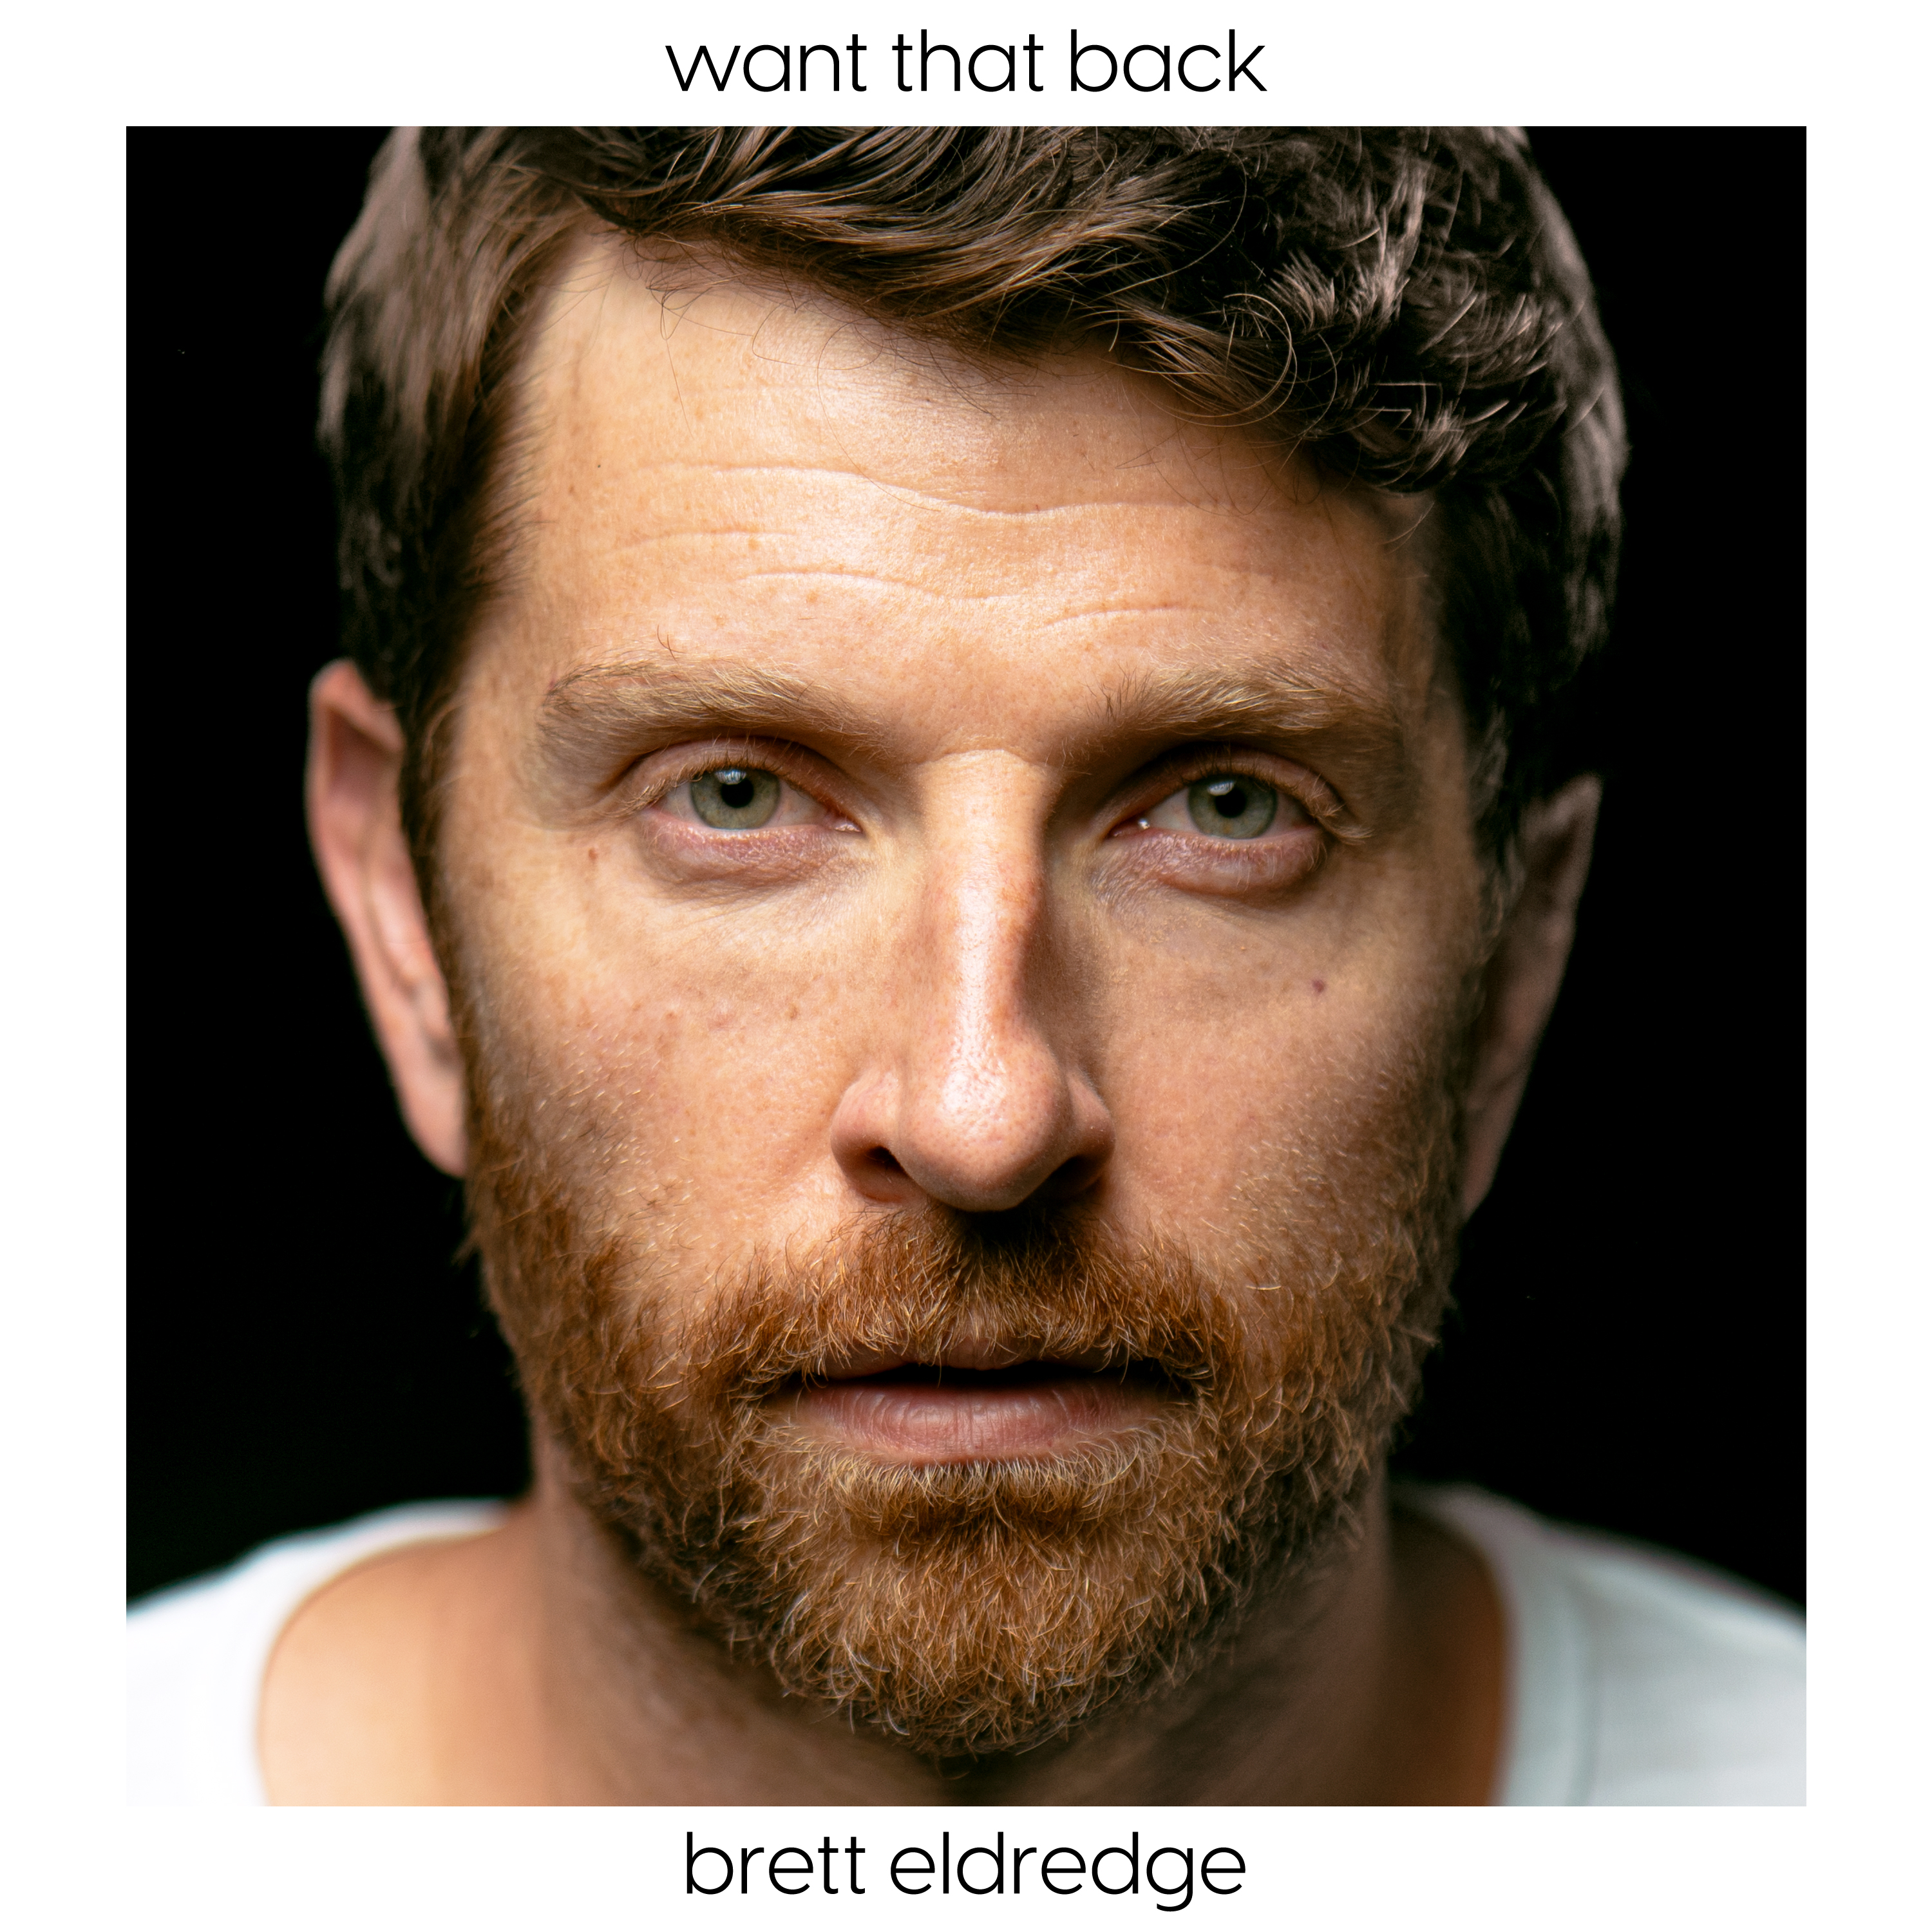 Brett Eldredge